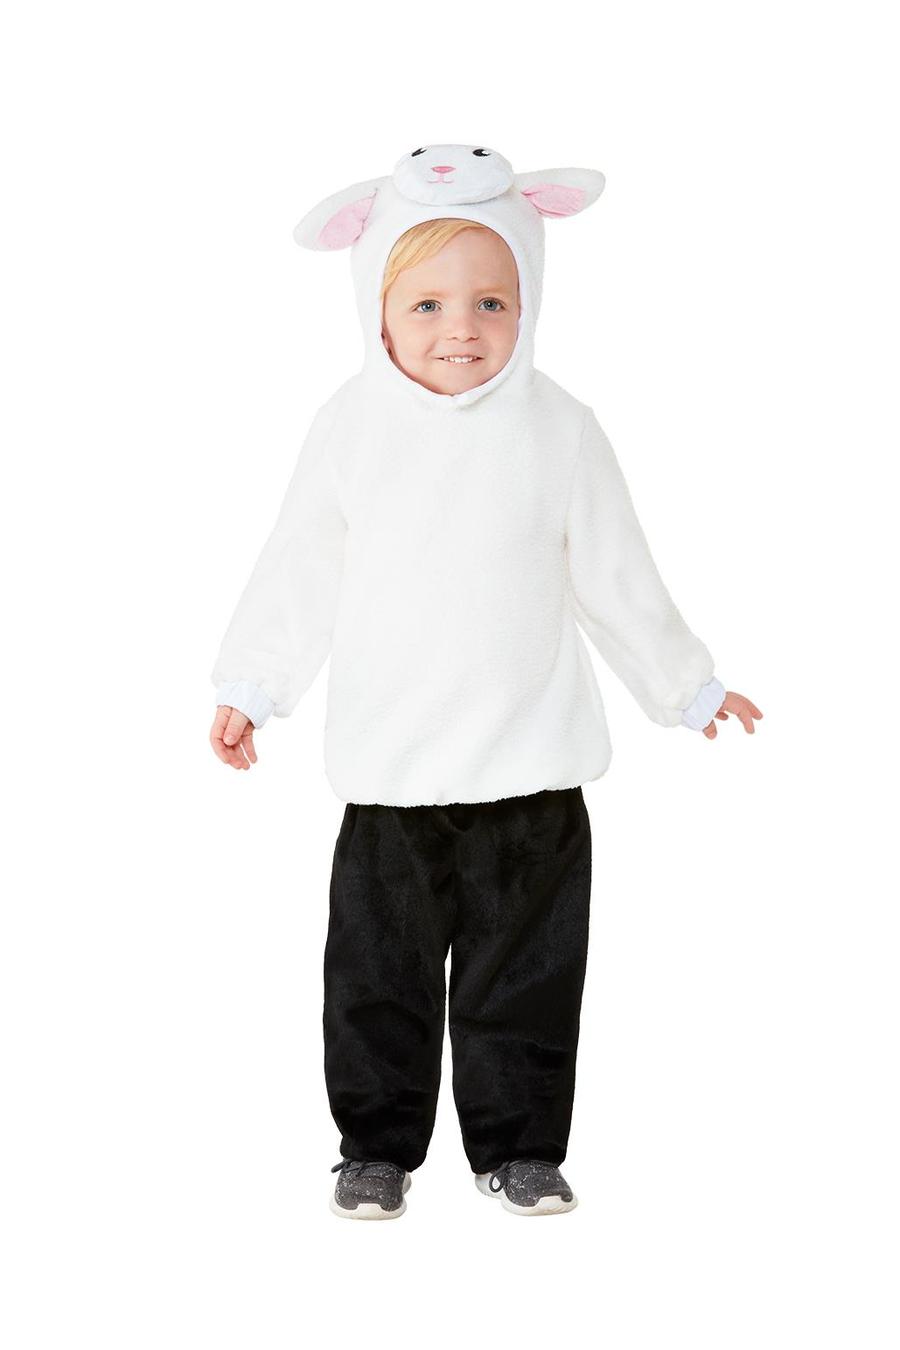 Toddler_Lamb_Costume_Alt1